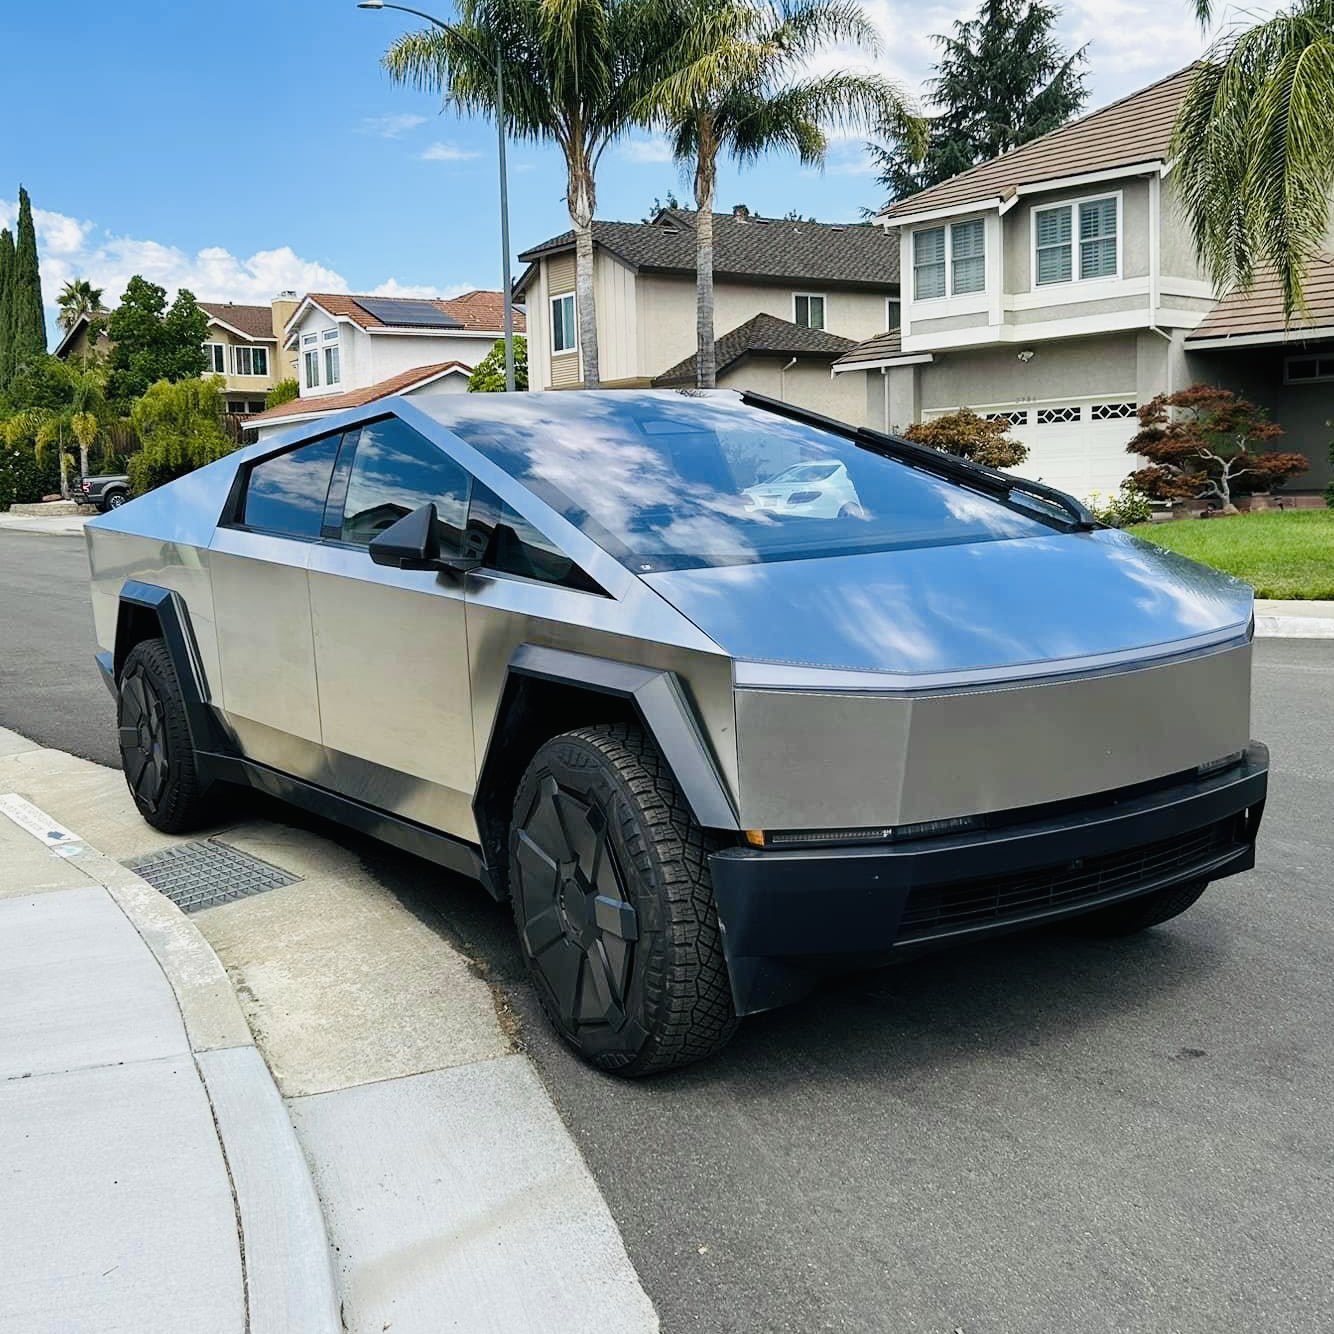 Tesla Cybertruck Cybertruck parked on street in residential neighborhood [9/9 pics] 1694414349548